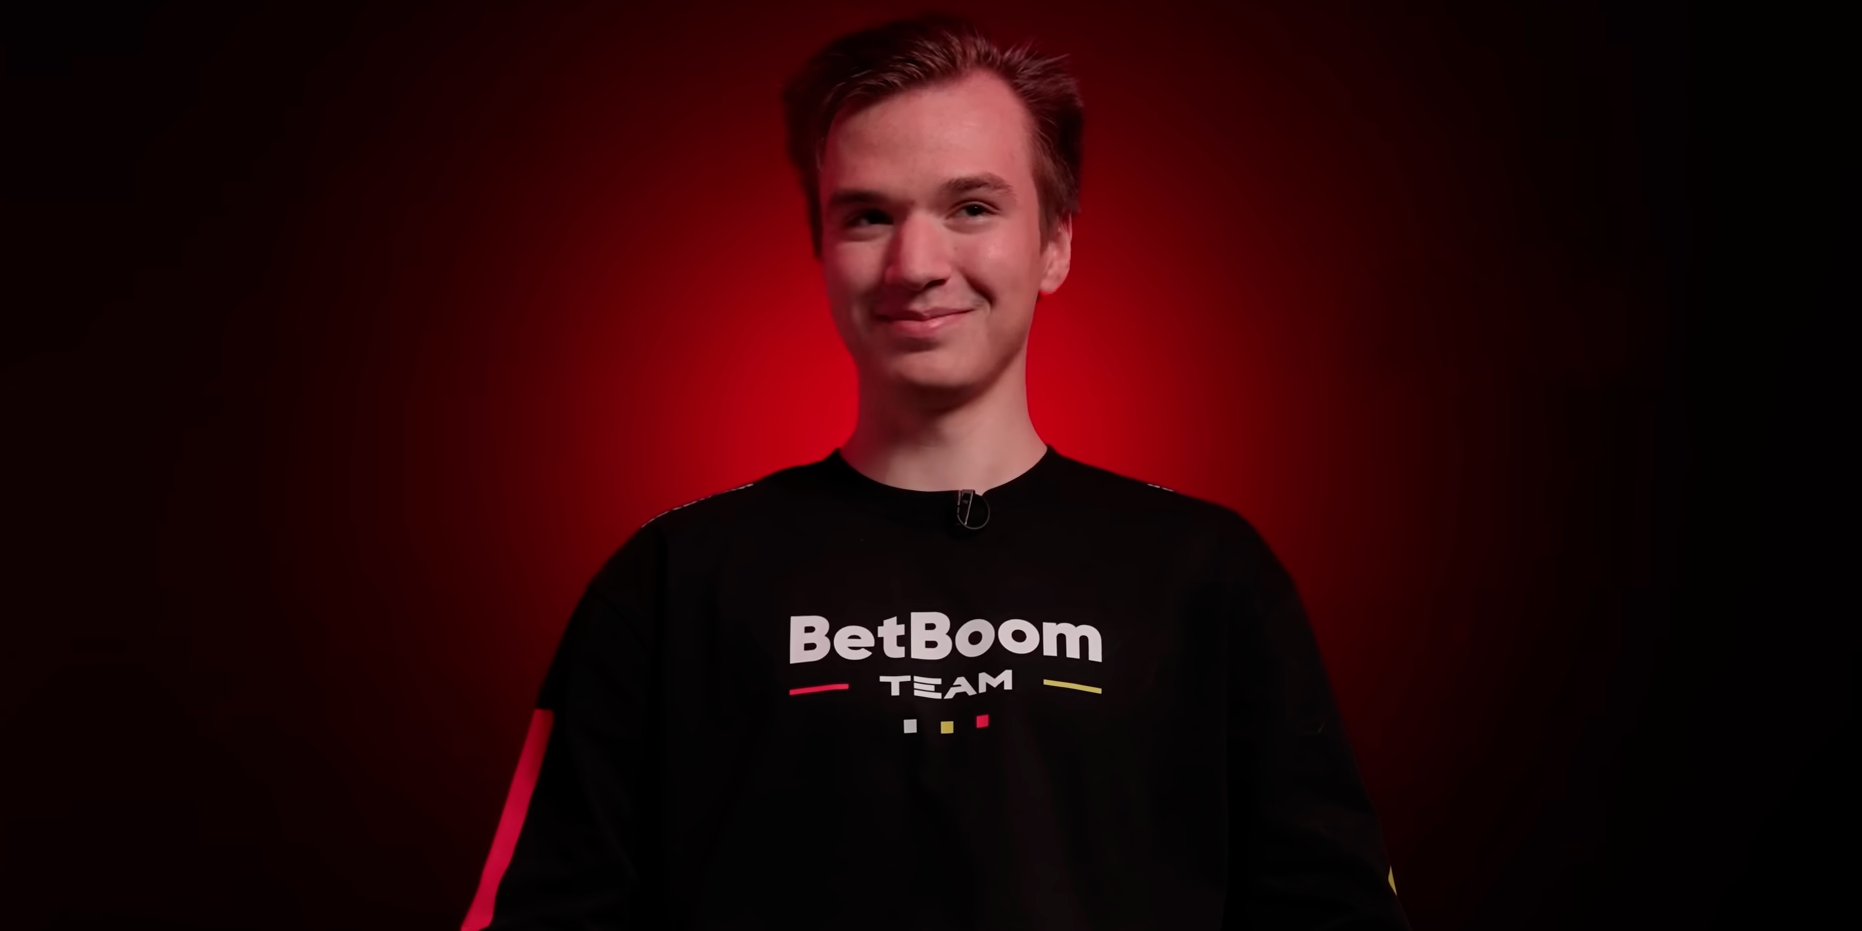 BetBoom Team – основной претендент на победу на TI12? Разбираем плюсы и минусы звёздного ростера